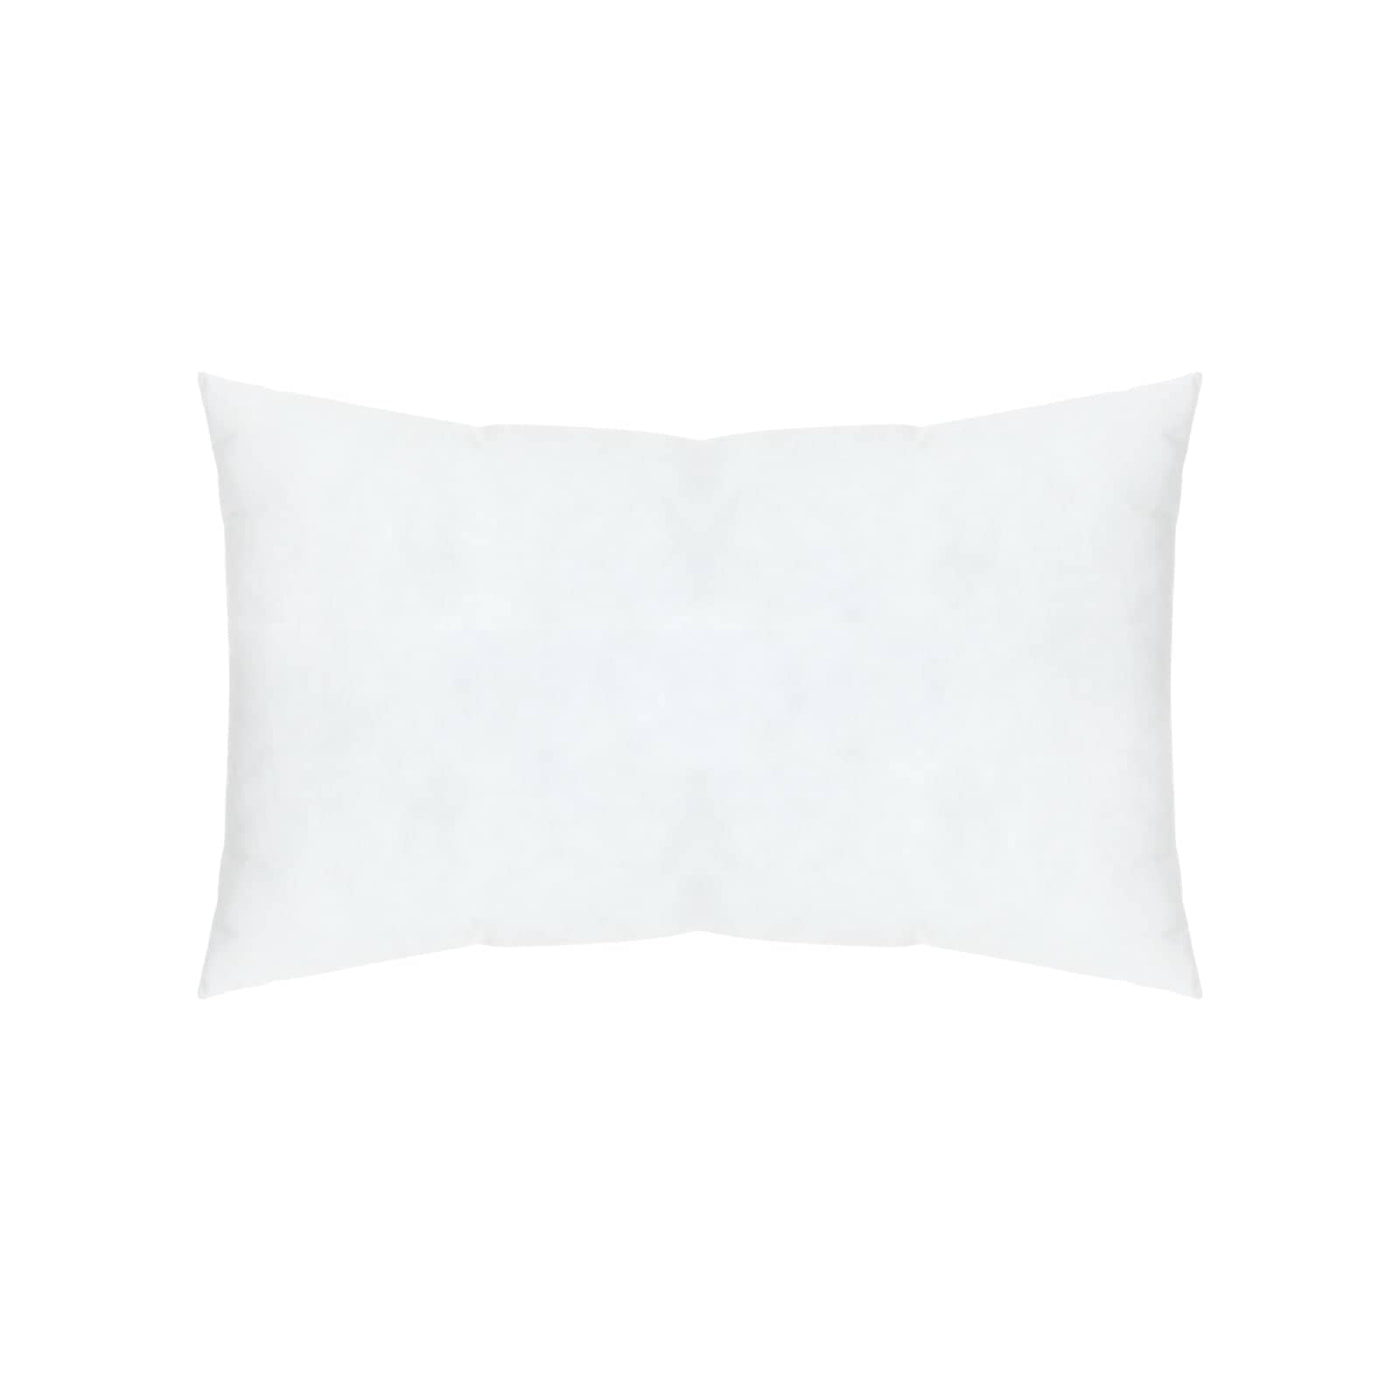 Medium Rectangular Cushion Pad, White, 30x50 cm Cushion Pads sazy.com